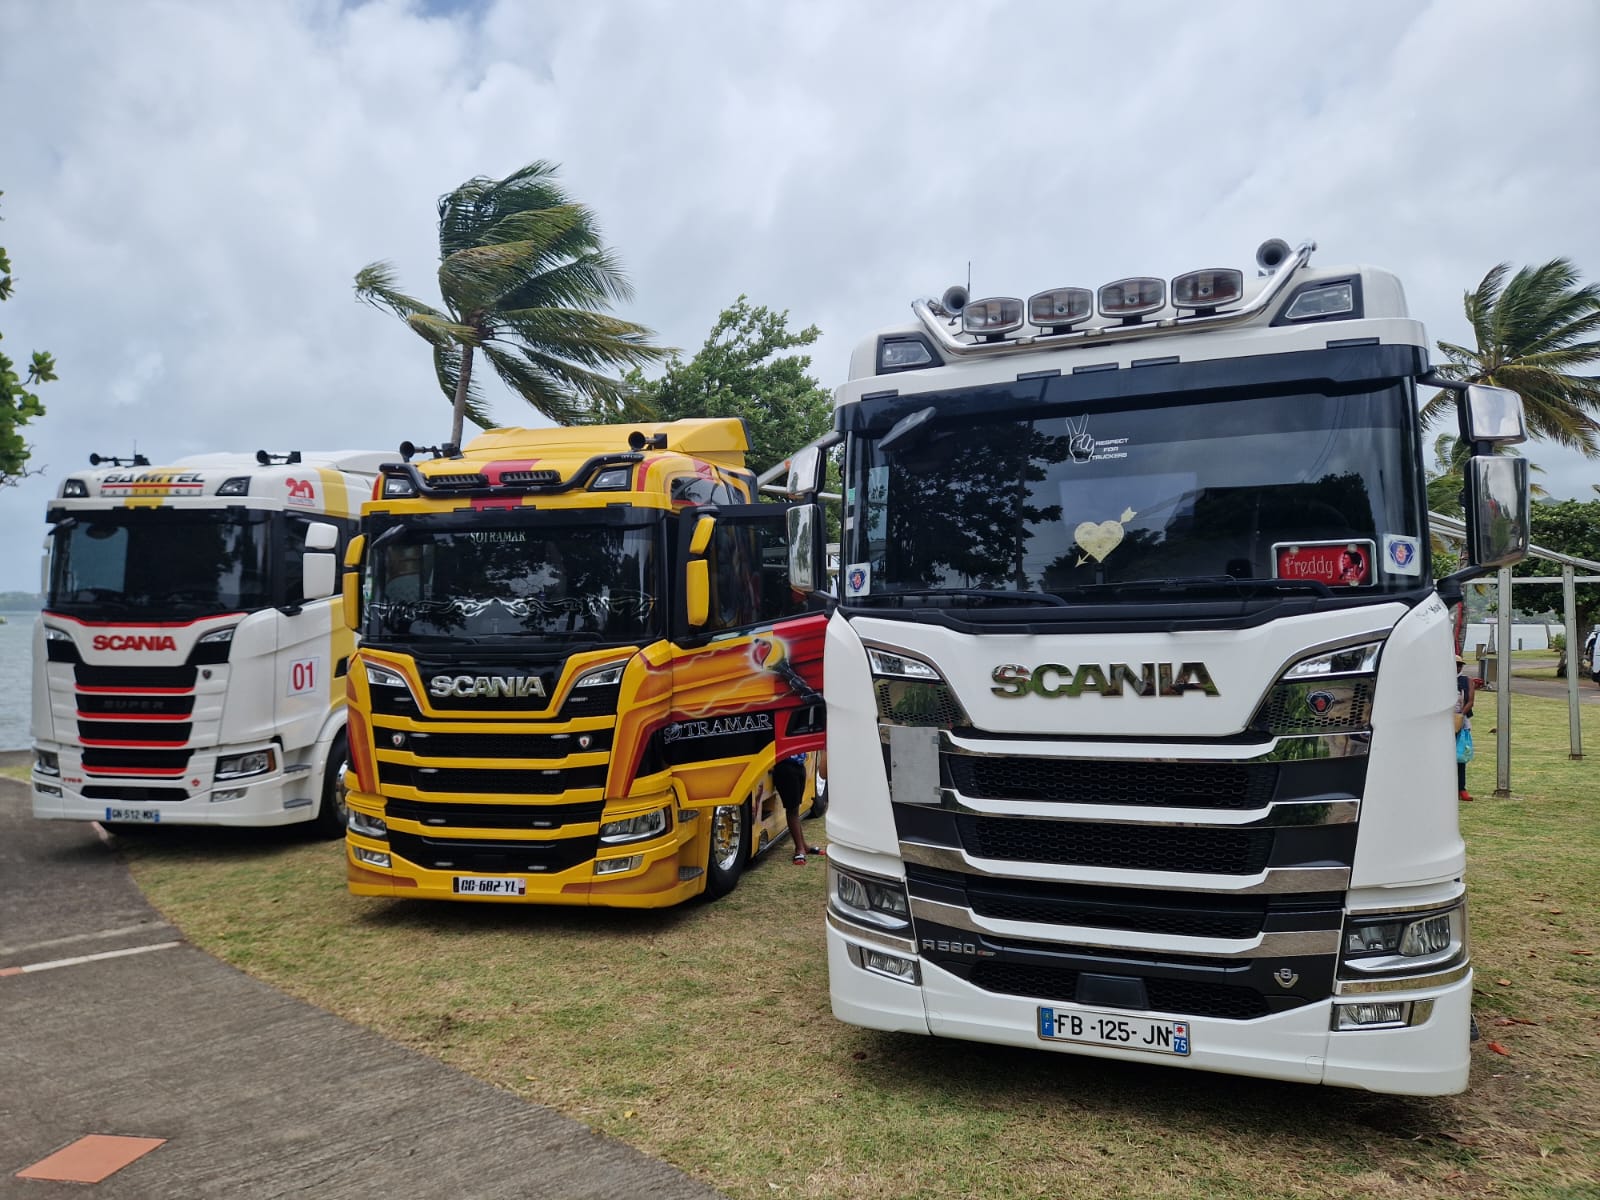     [En images] La seconde édition du Truck Show de Martinique

